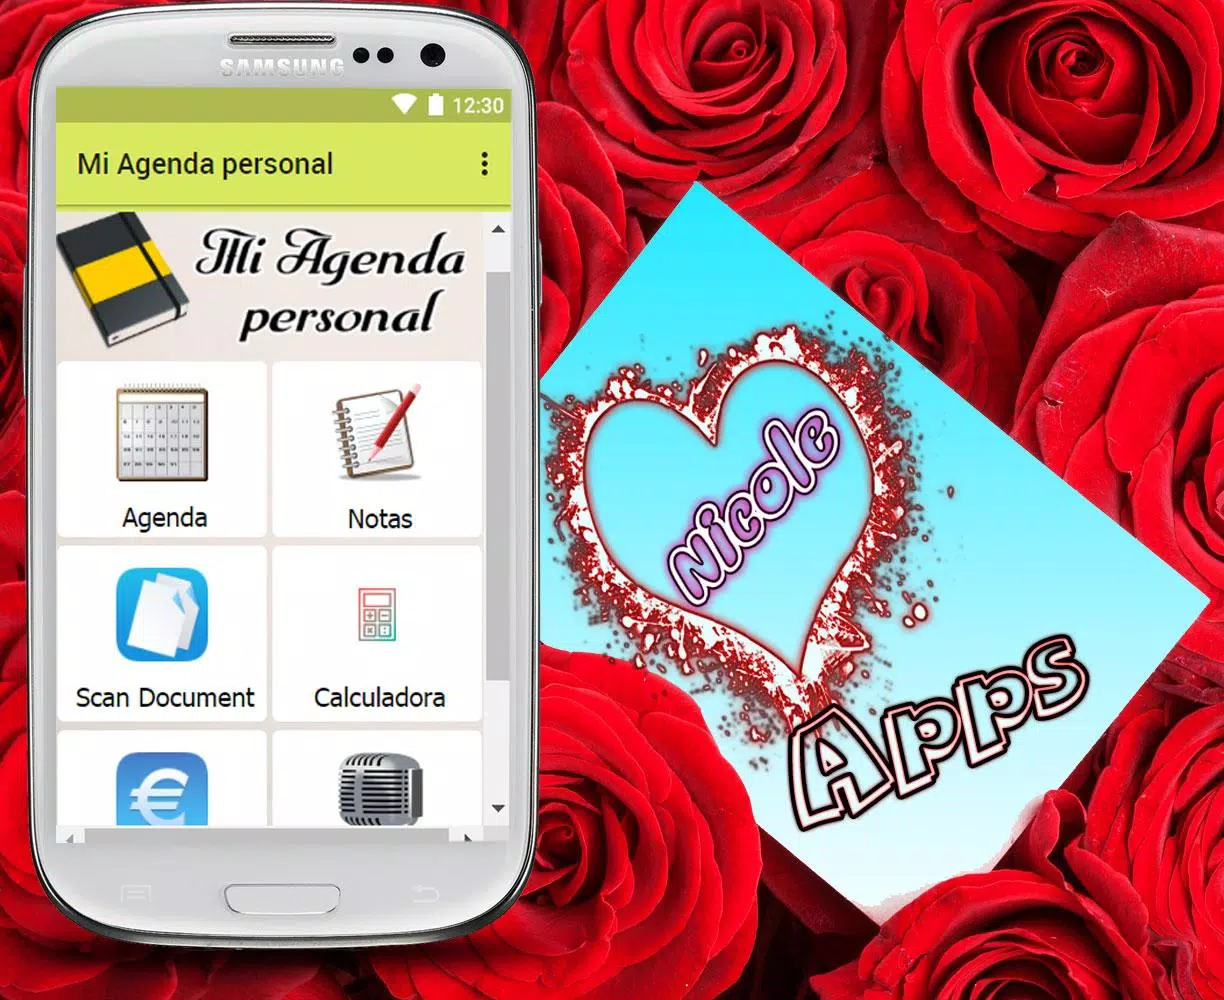 Mi agenda personal Gratuita for Android - APK Download